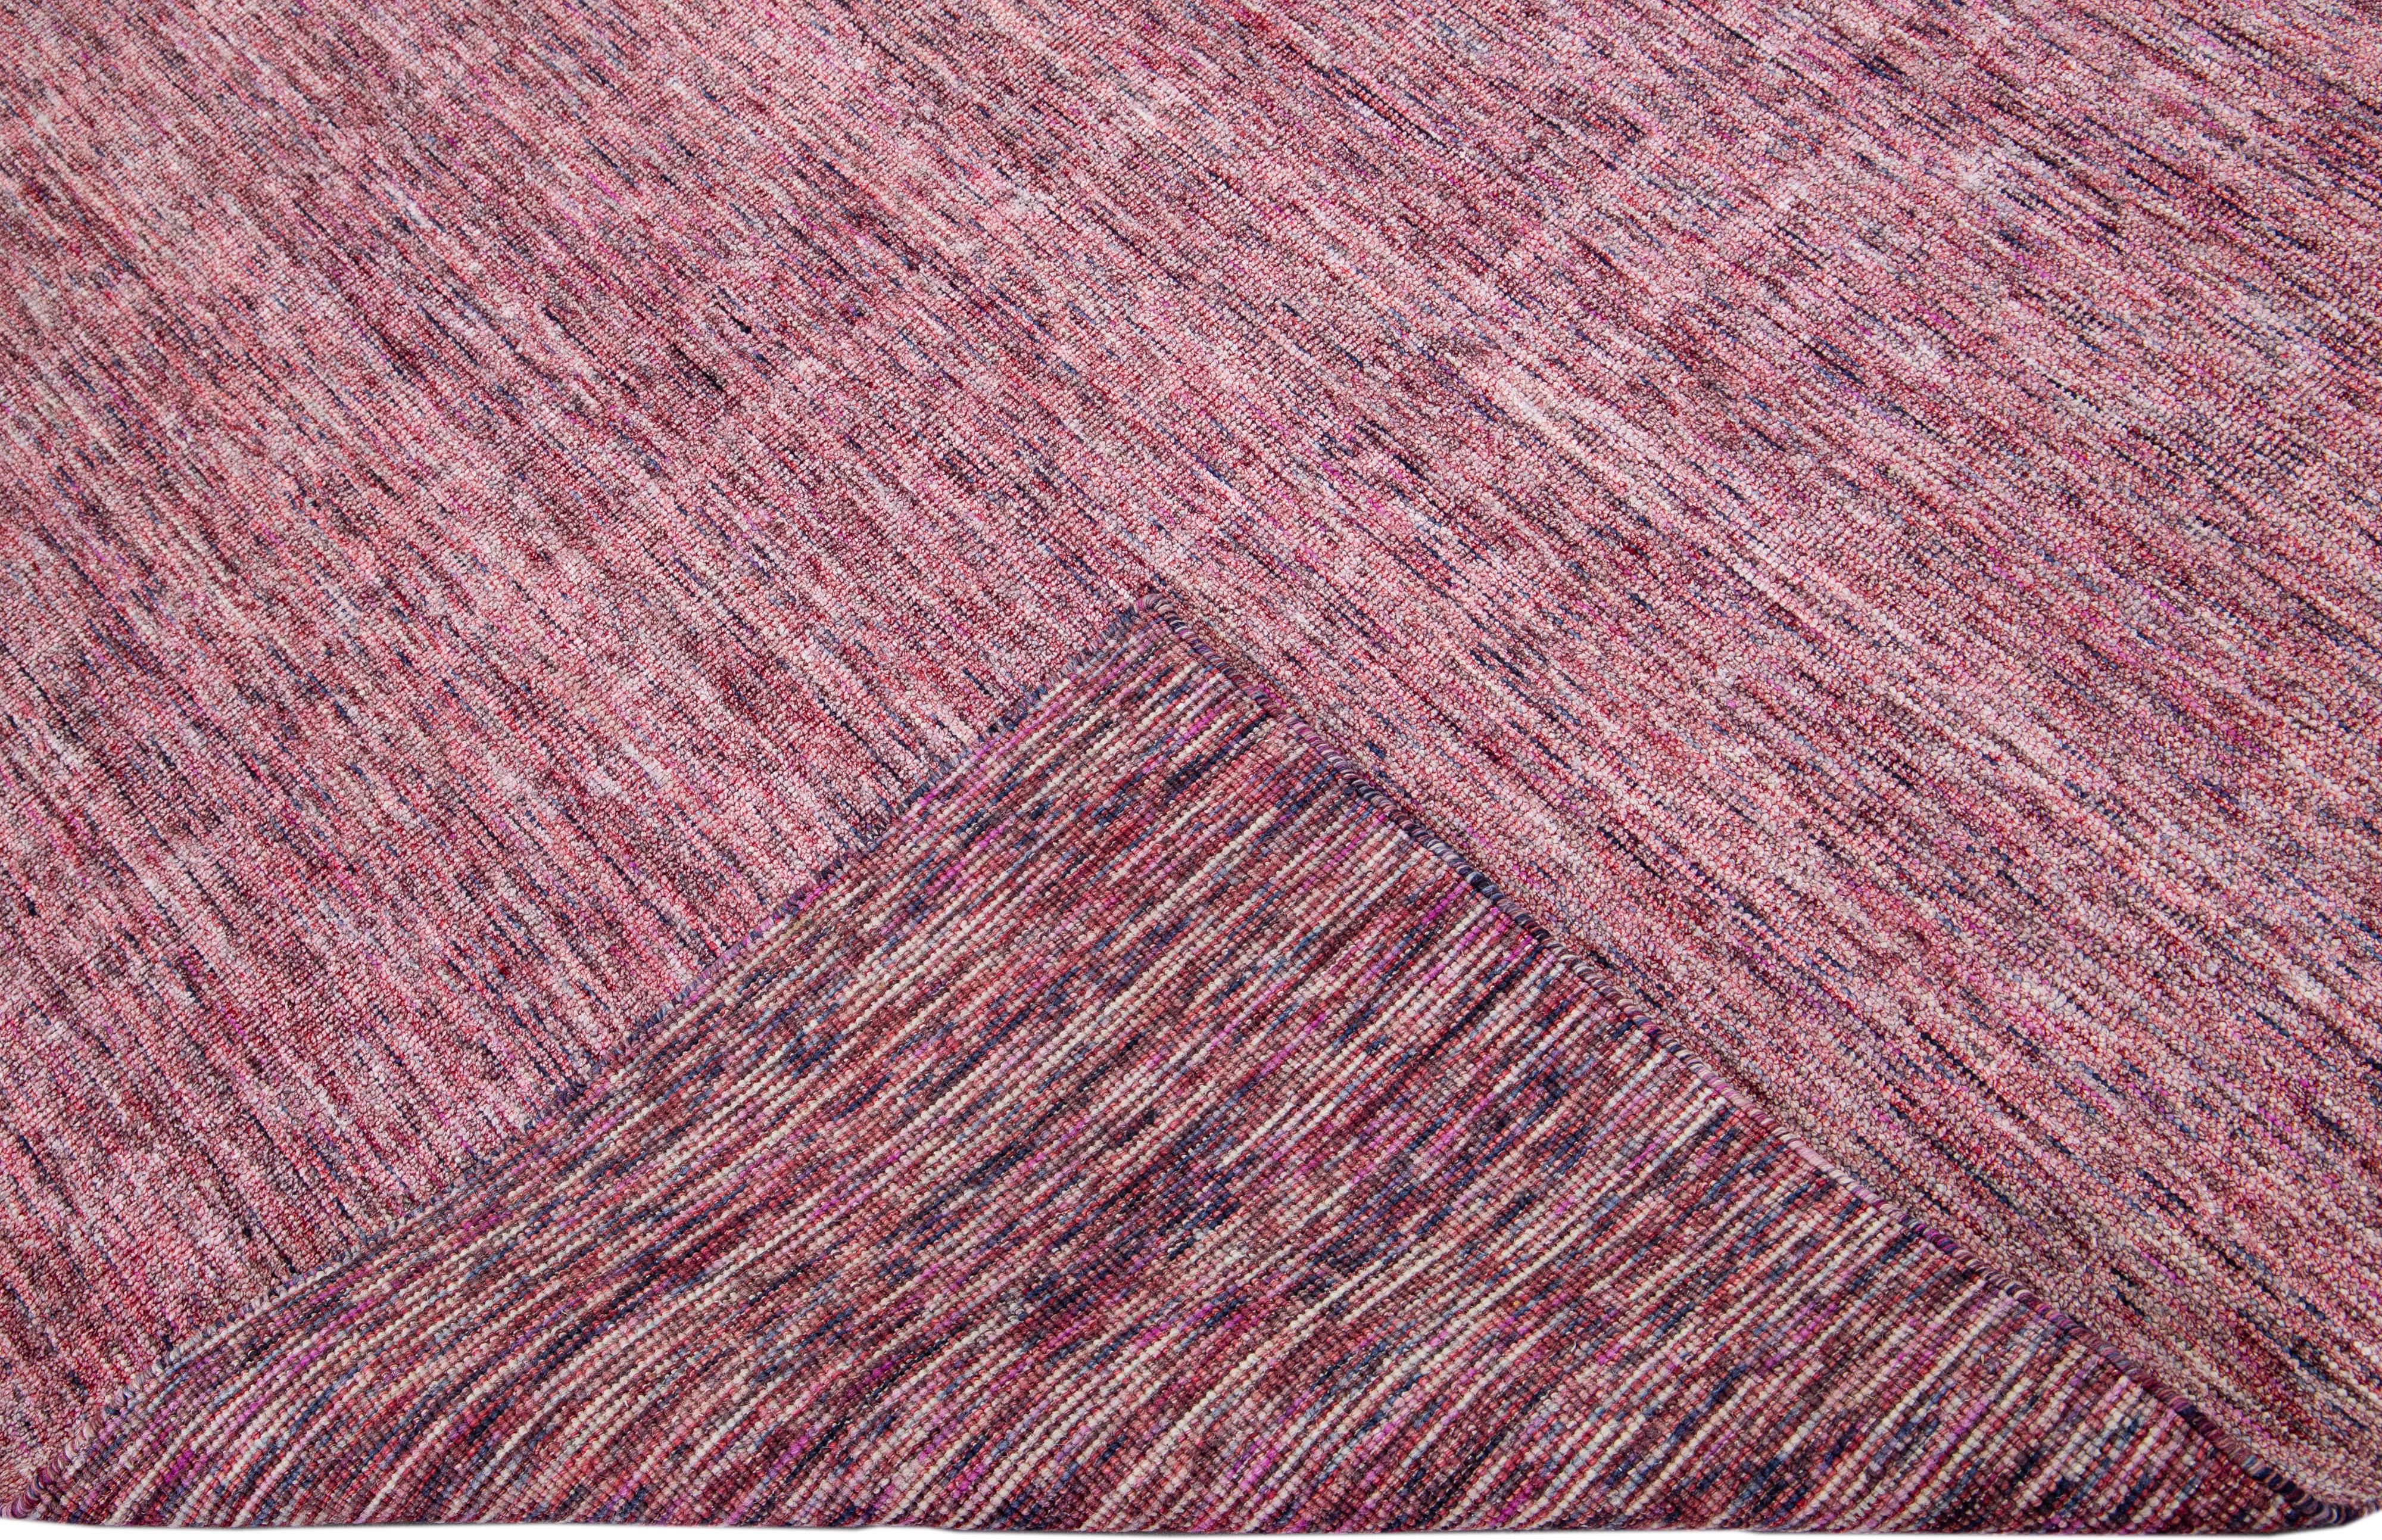 Schöner handgefertigter indischer Rillenteppich aus Bambus und Seide von Apadanas mit rotem Feld. Dieser Teppich aus der Groove-Kollektion hat ein durchgängig unifarbenes Muster.

Dieser Teppich misst: 9' x 12'.

Kundenspezifische Farben und